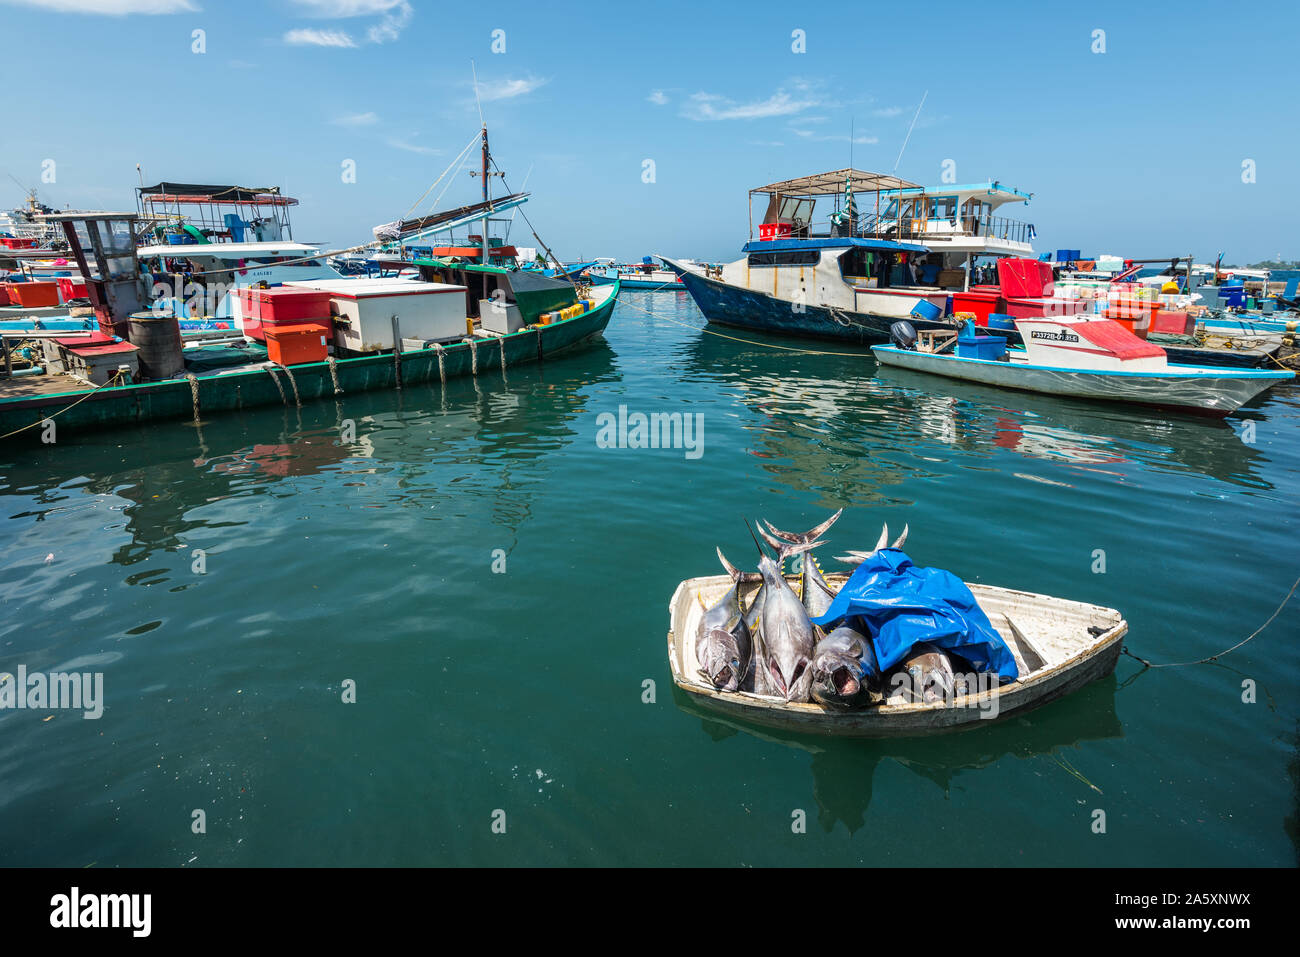 Maschio, Maldive - Novembre 17, 2017: Area del mercato del pesce fresco nel maschio, Maldive. Tonno pesce fresco in una piccola barca in acqua per la vendita al mercato del pesce. Foto Stock